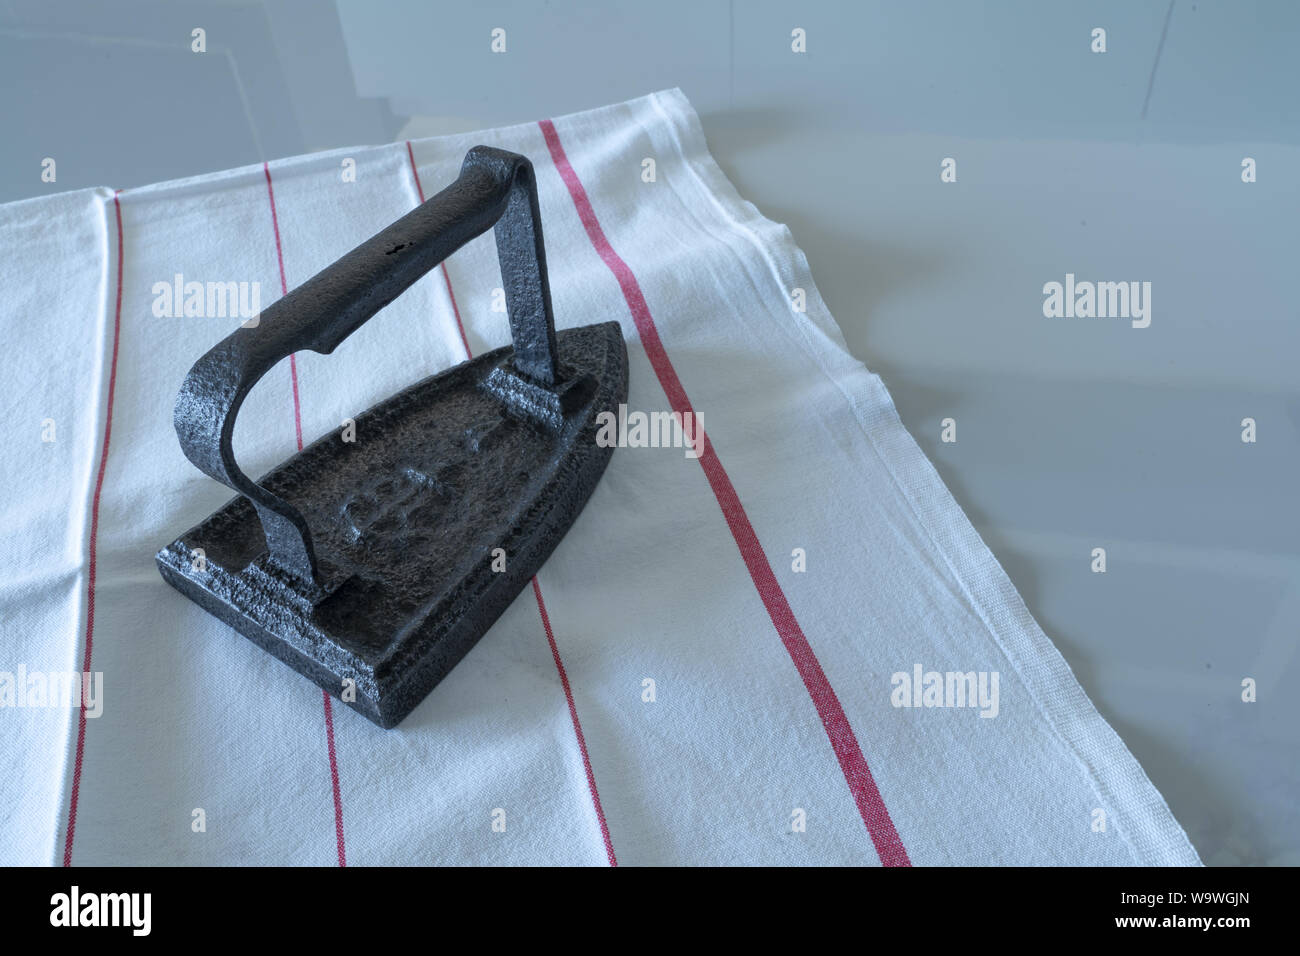 Un lissage vintage repasseuse objet sur une table Banque D'Images